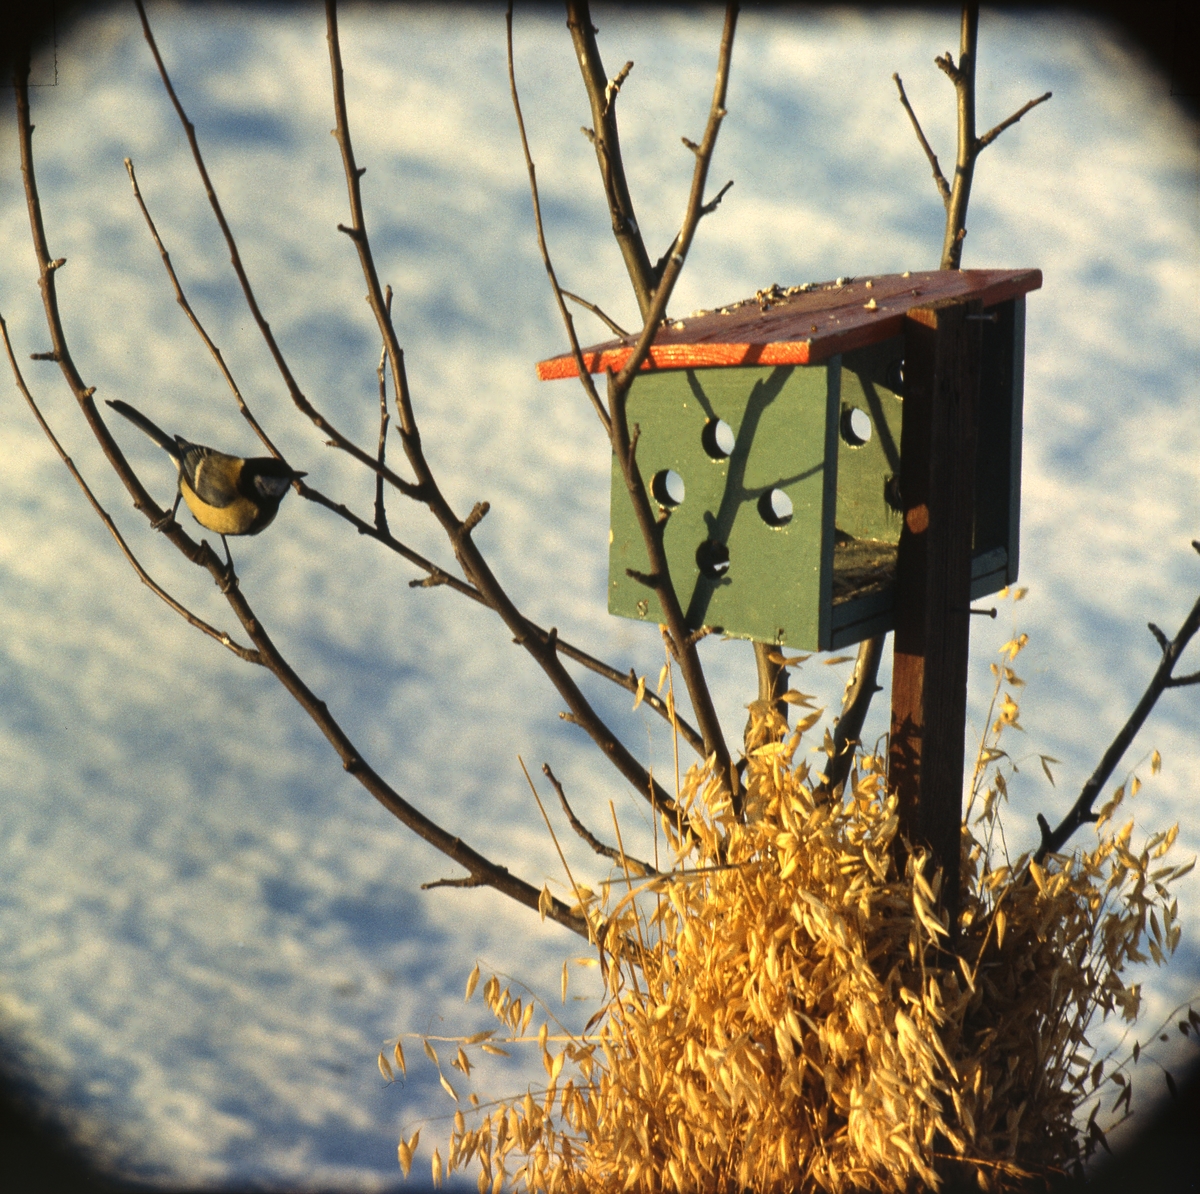 En fågelmatare på en stolpe, där det även finns en kärve. En talgoxe sitter på en kvist i närheten.